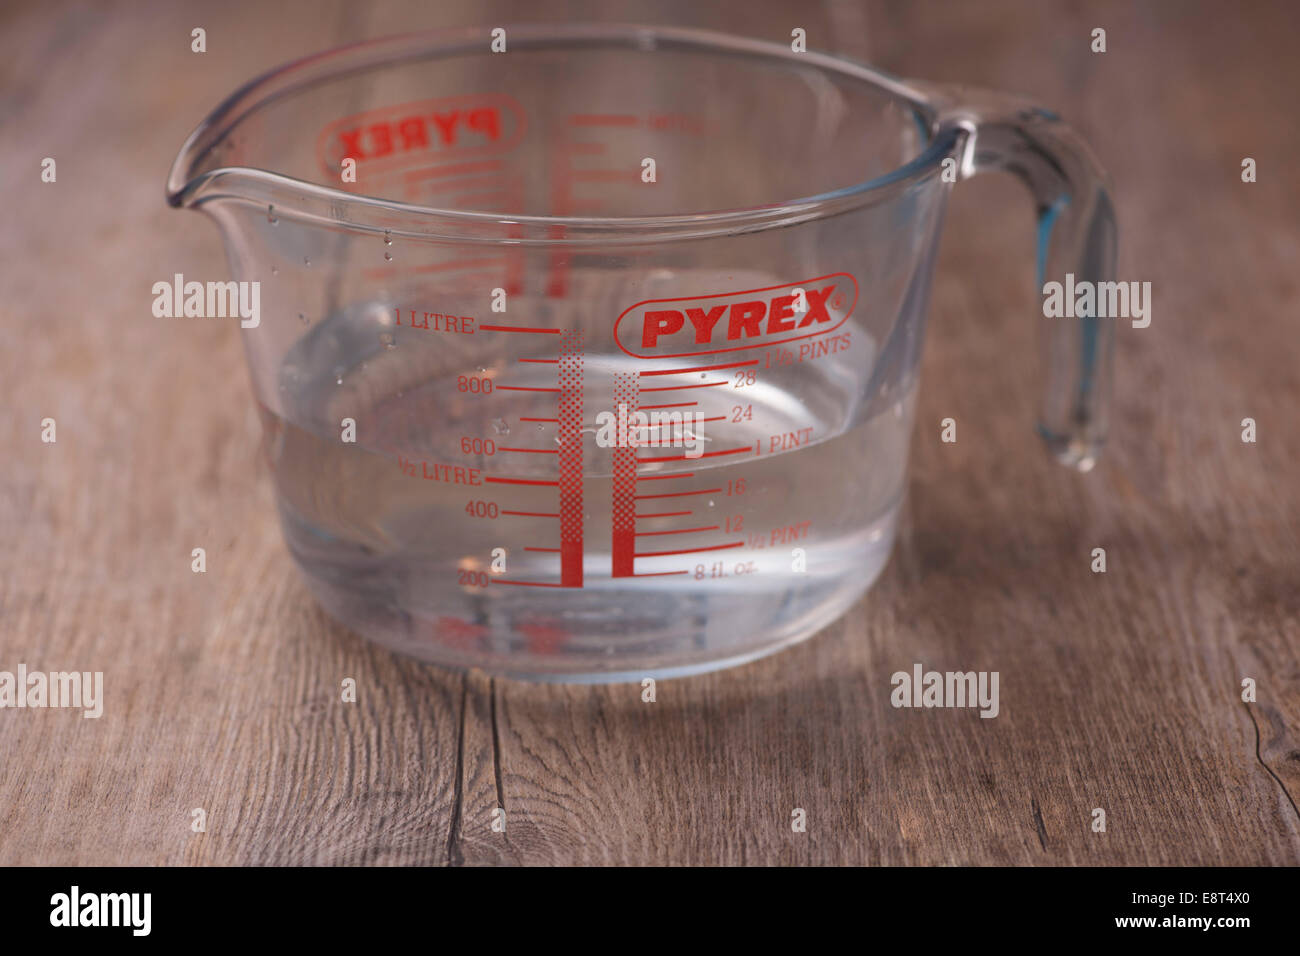 Vetro Pyrex 1 litro caraffa graduata Foto stock - Alamy